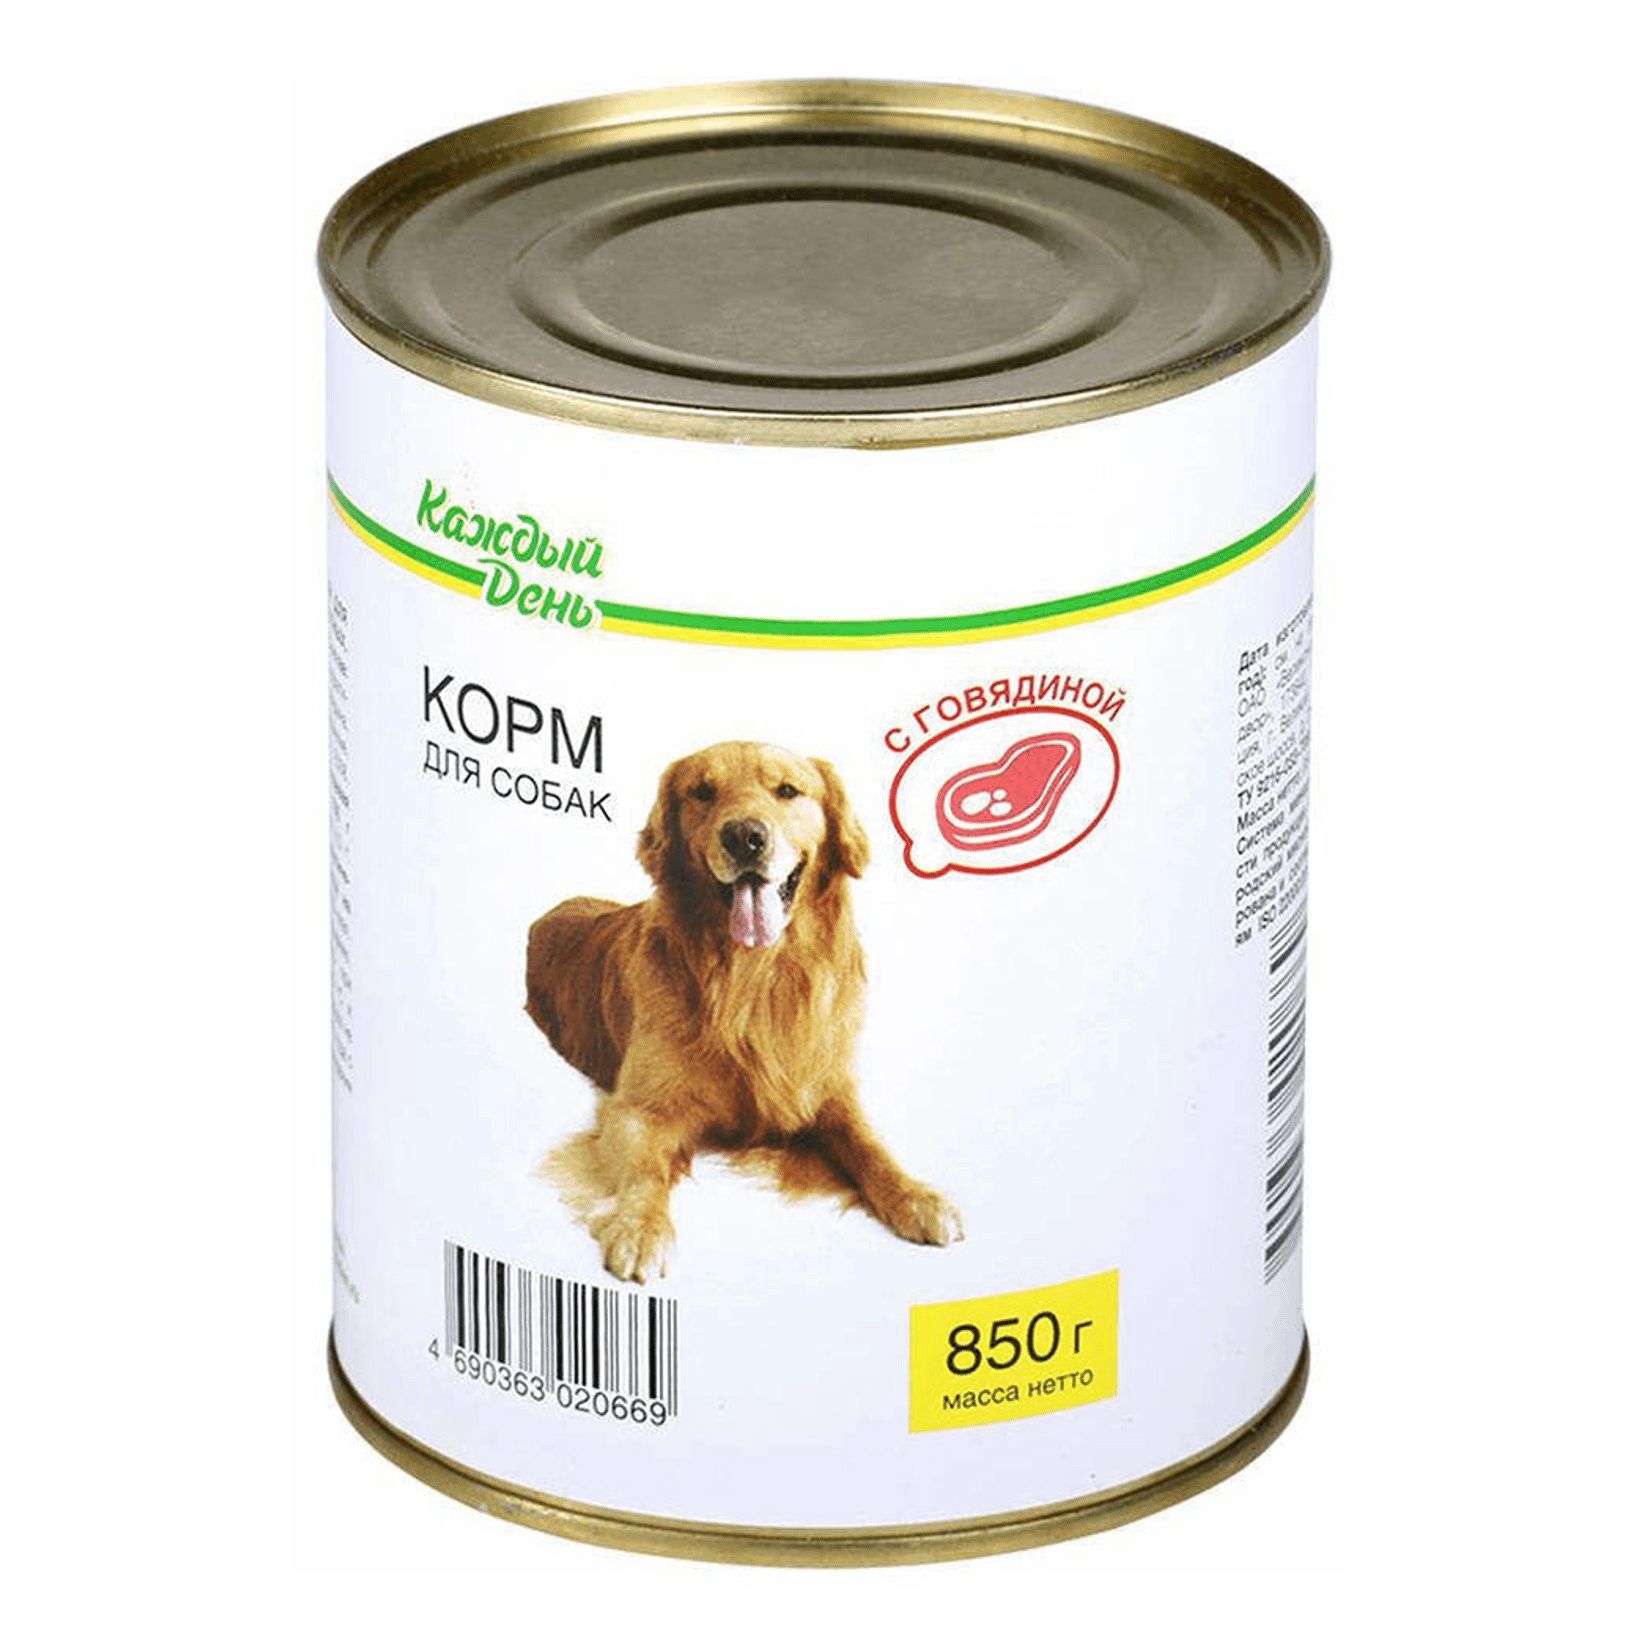 Корм для собак челябинск. Корм для собак каждый день консервы для собак с говядиной (0.85 кг) 1 шт.. Корм для собак darsi (0.85 кг) 1 шт. Консервы для собак: говядина и рис. Корм для собак Rocky (0.25 кг) 1 шт. Паштет с говядиной для собак. Корм для собак Aras (0.82 кг) 1 шт. Premium select для собак - говядина с овощами и рисом.